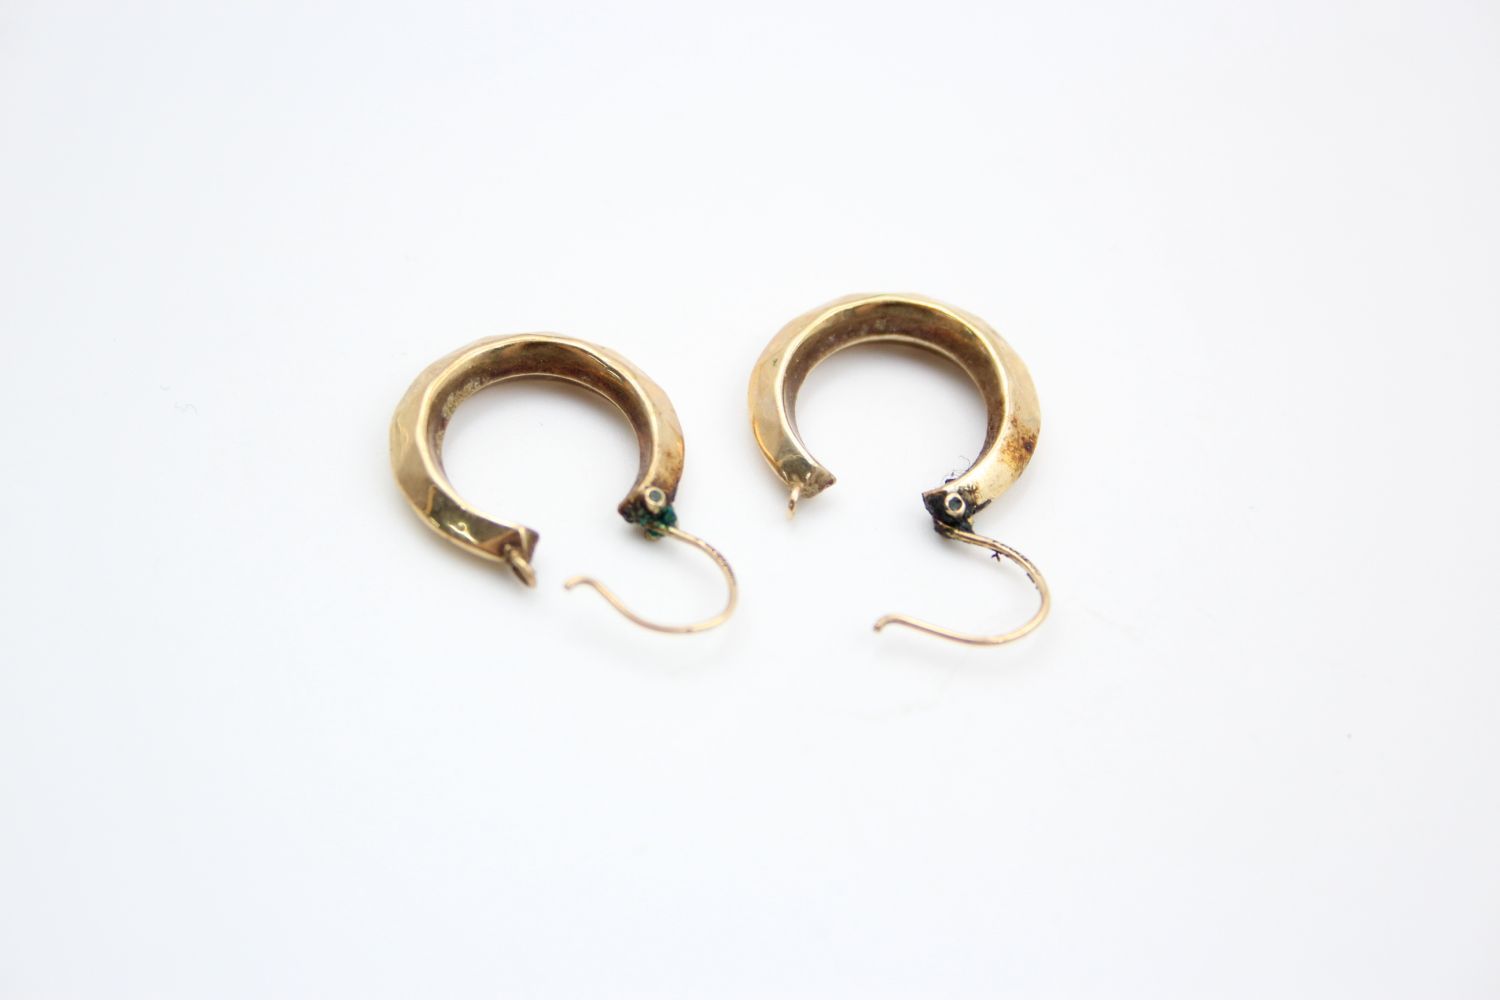 2 x 9ct gold hoop earrings 2.5 grams gross - Image 4 of 9